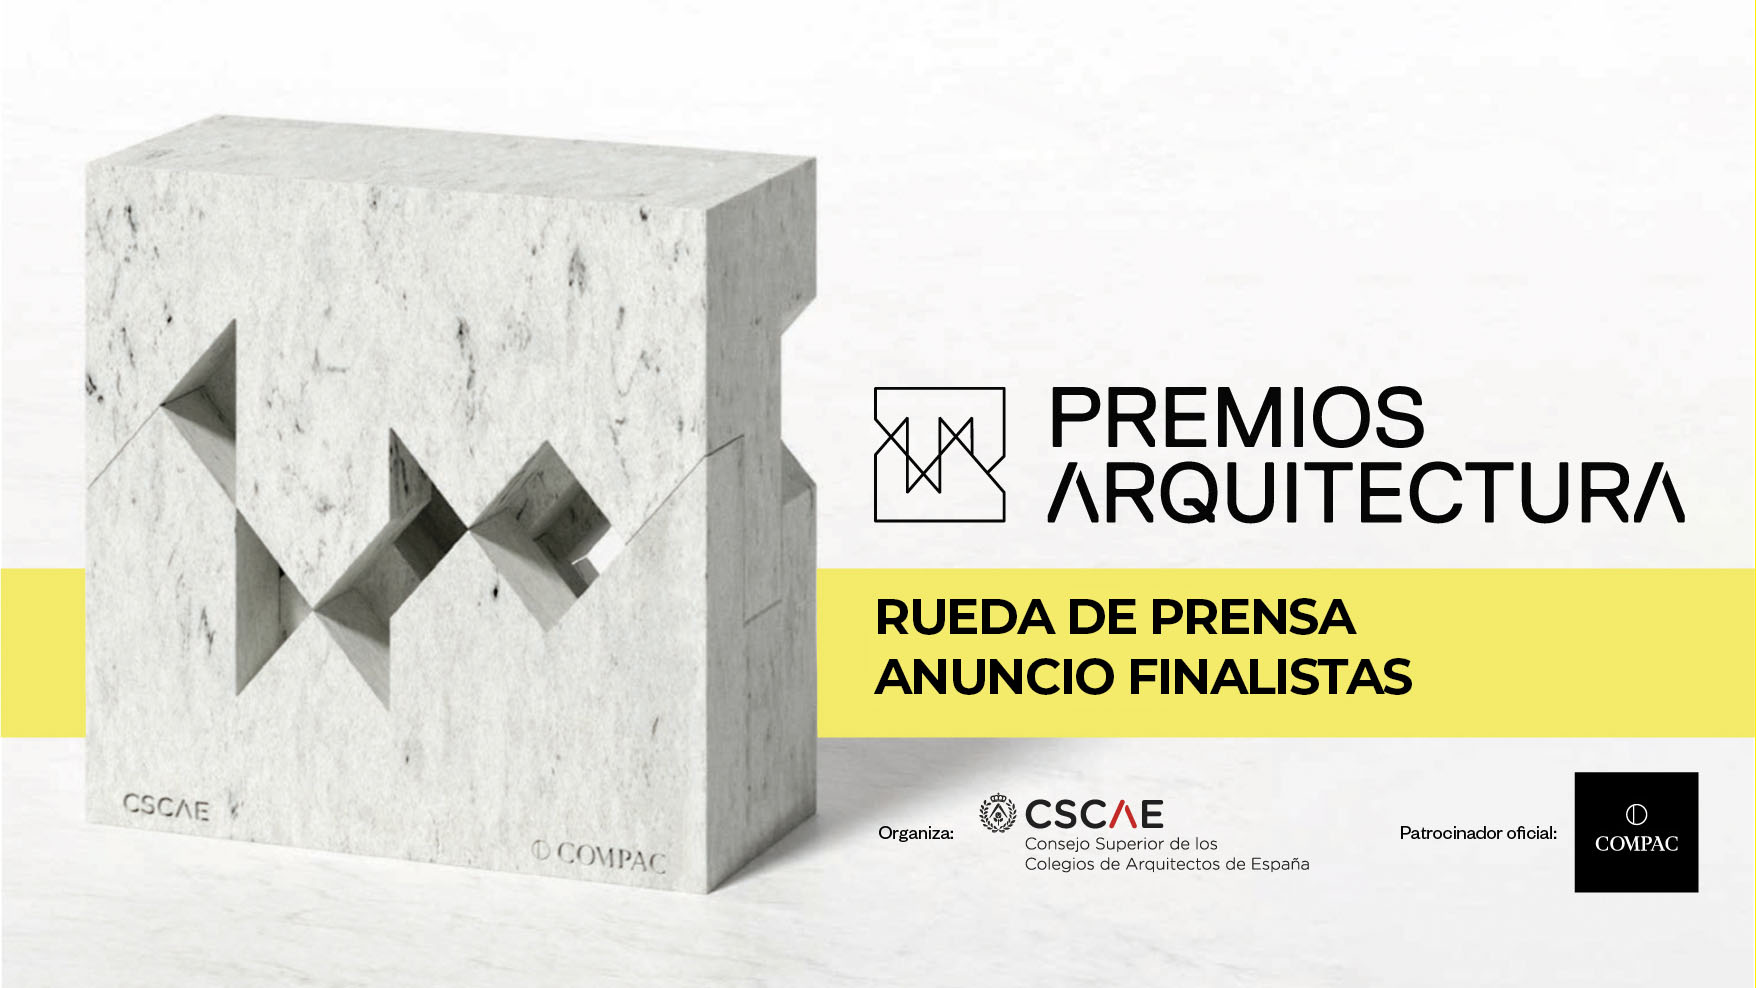 El CSCAE anunciará en directo los 21 proyectos finalistas a los Premios ARQUITECTURA